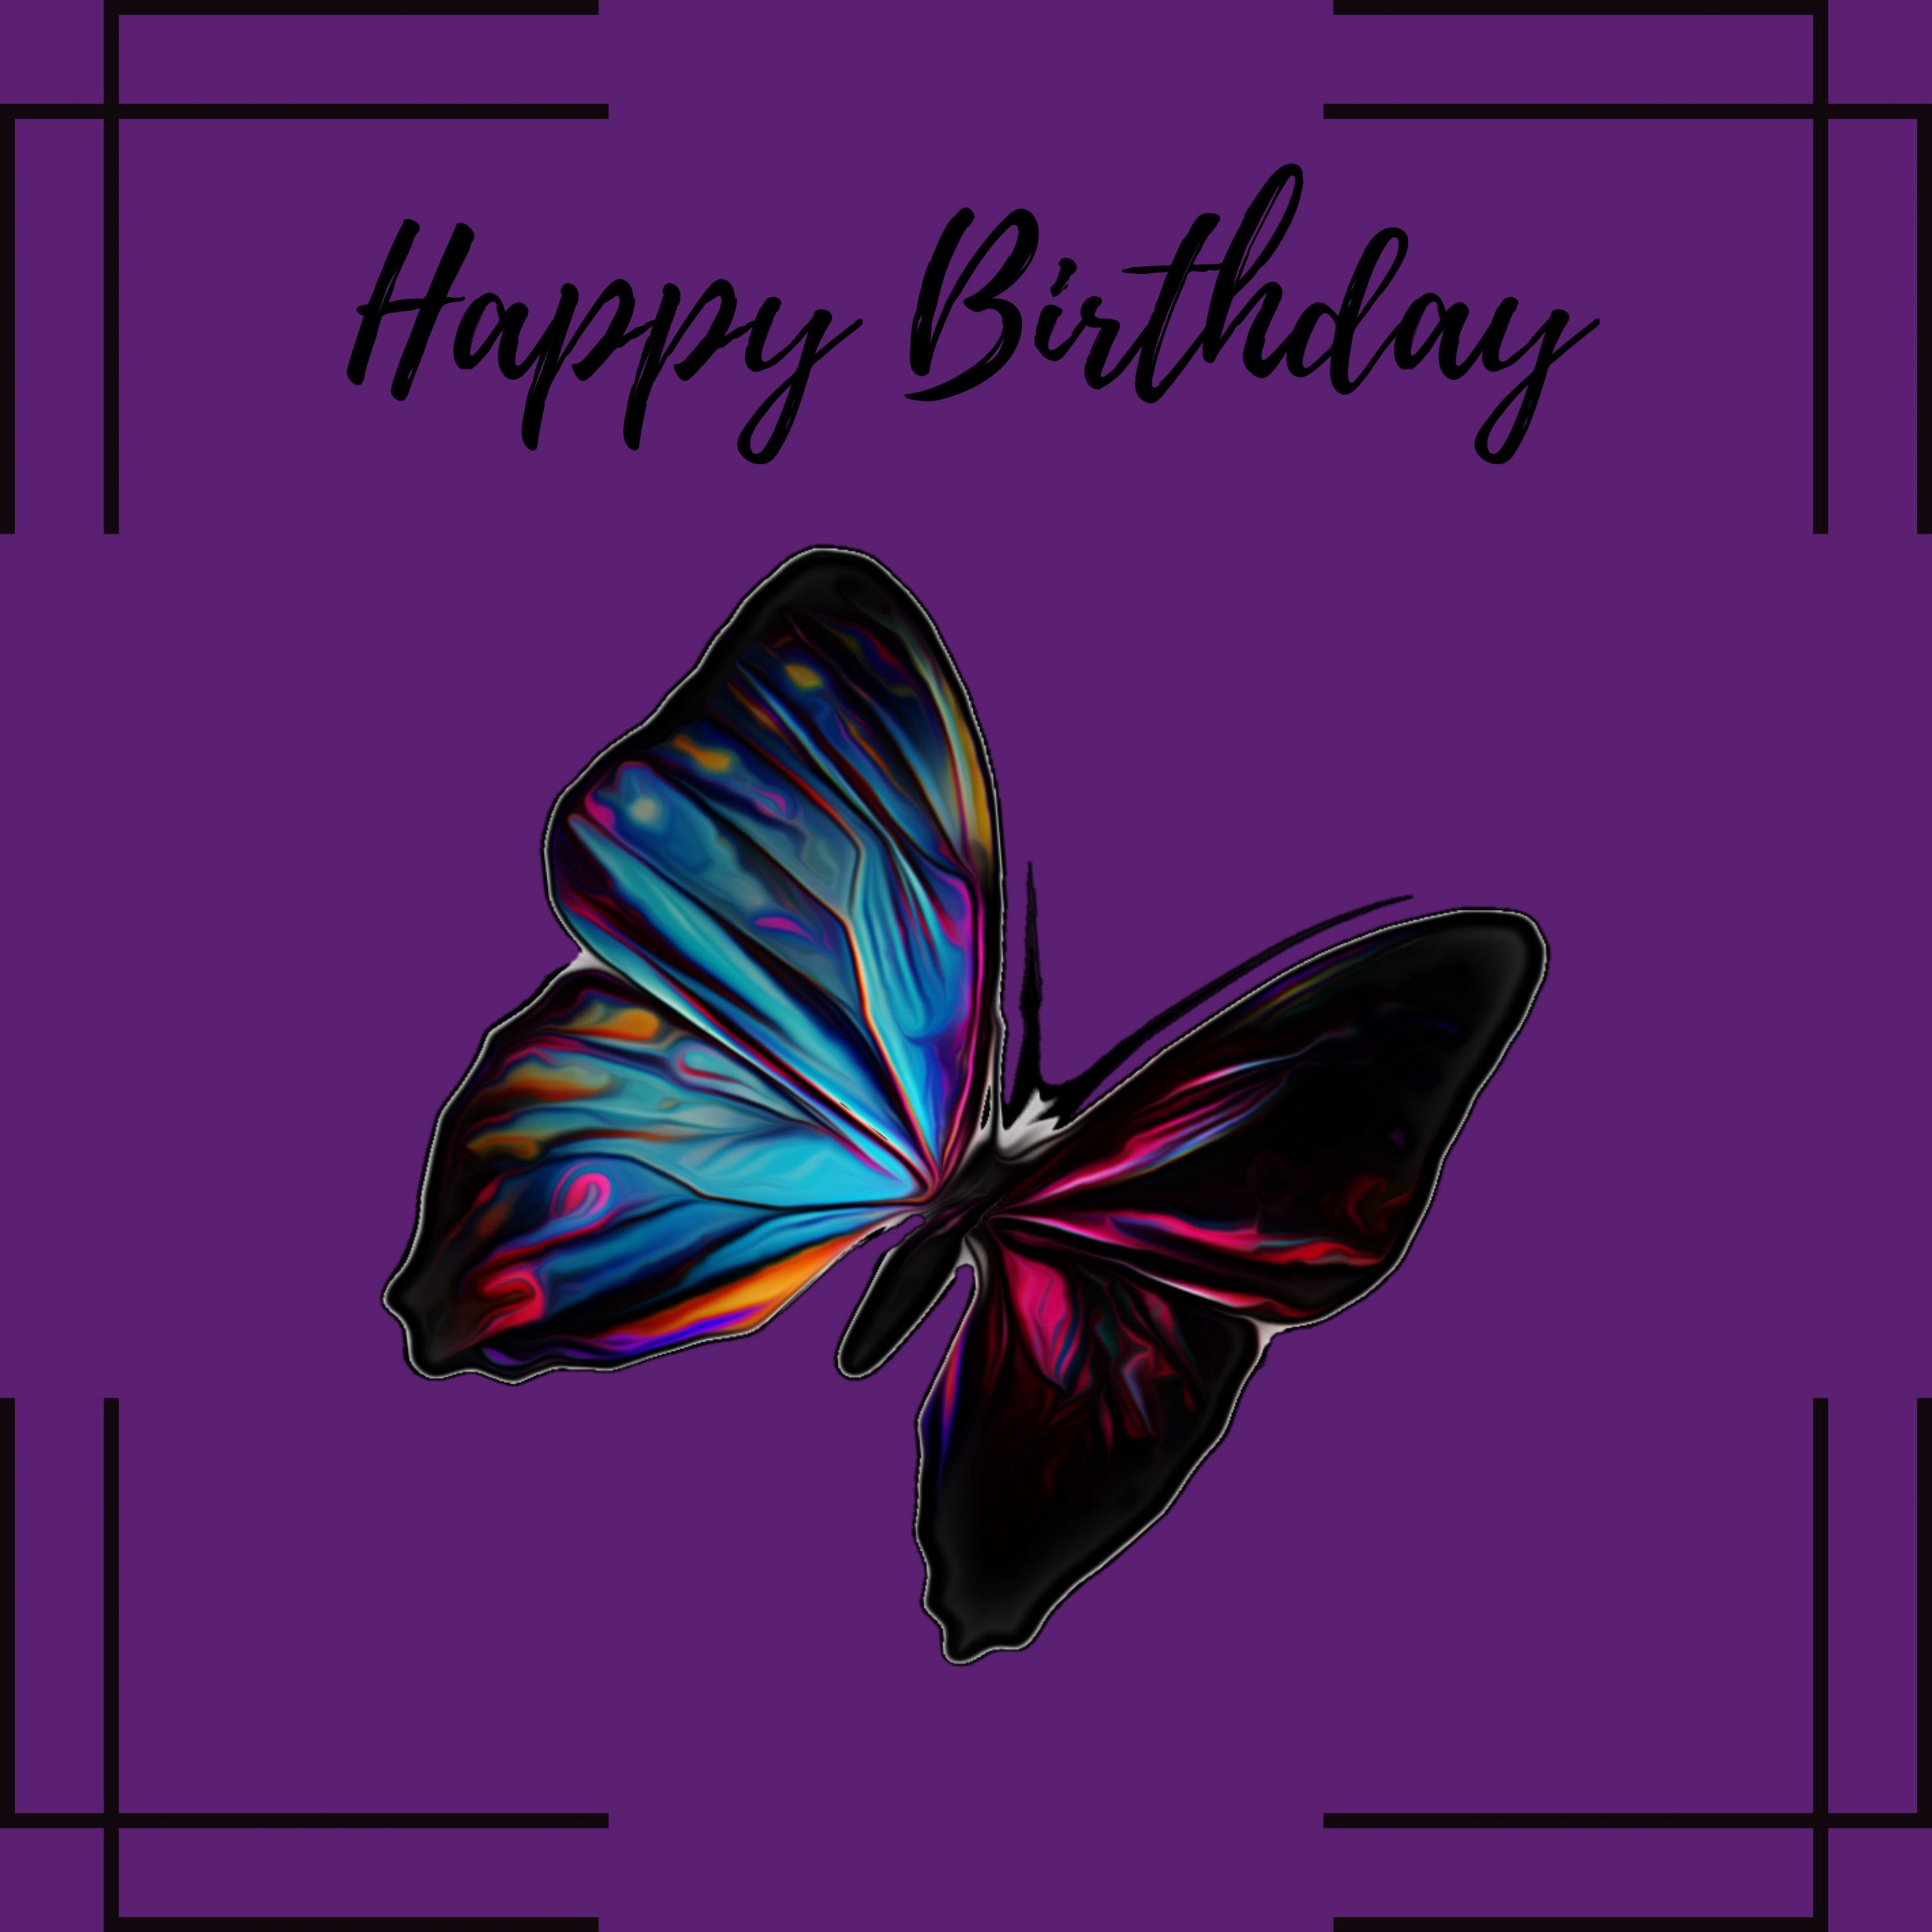 2934x2934 iOS iPad wallpaper 4k Happy Birthday Rainbow Butterfly Ipad Wallpaper 2934x2934 pixels resolution